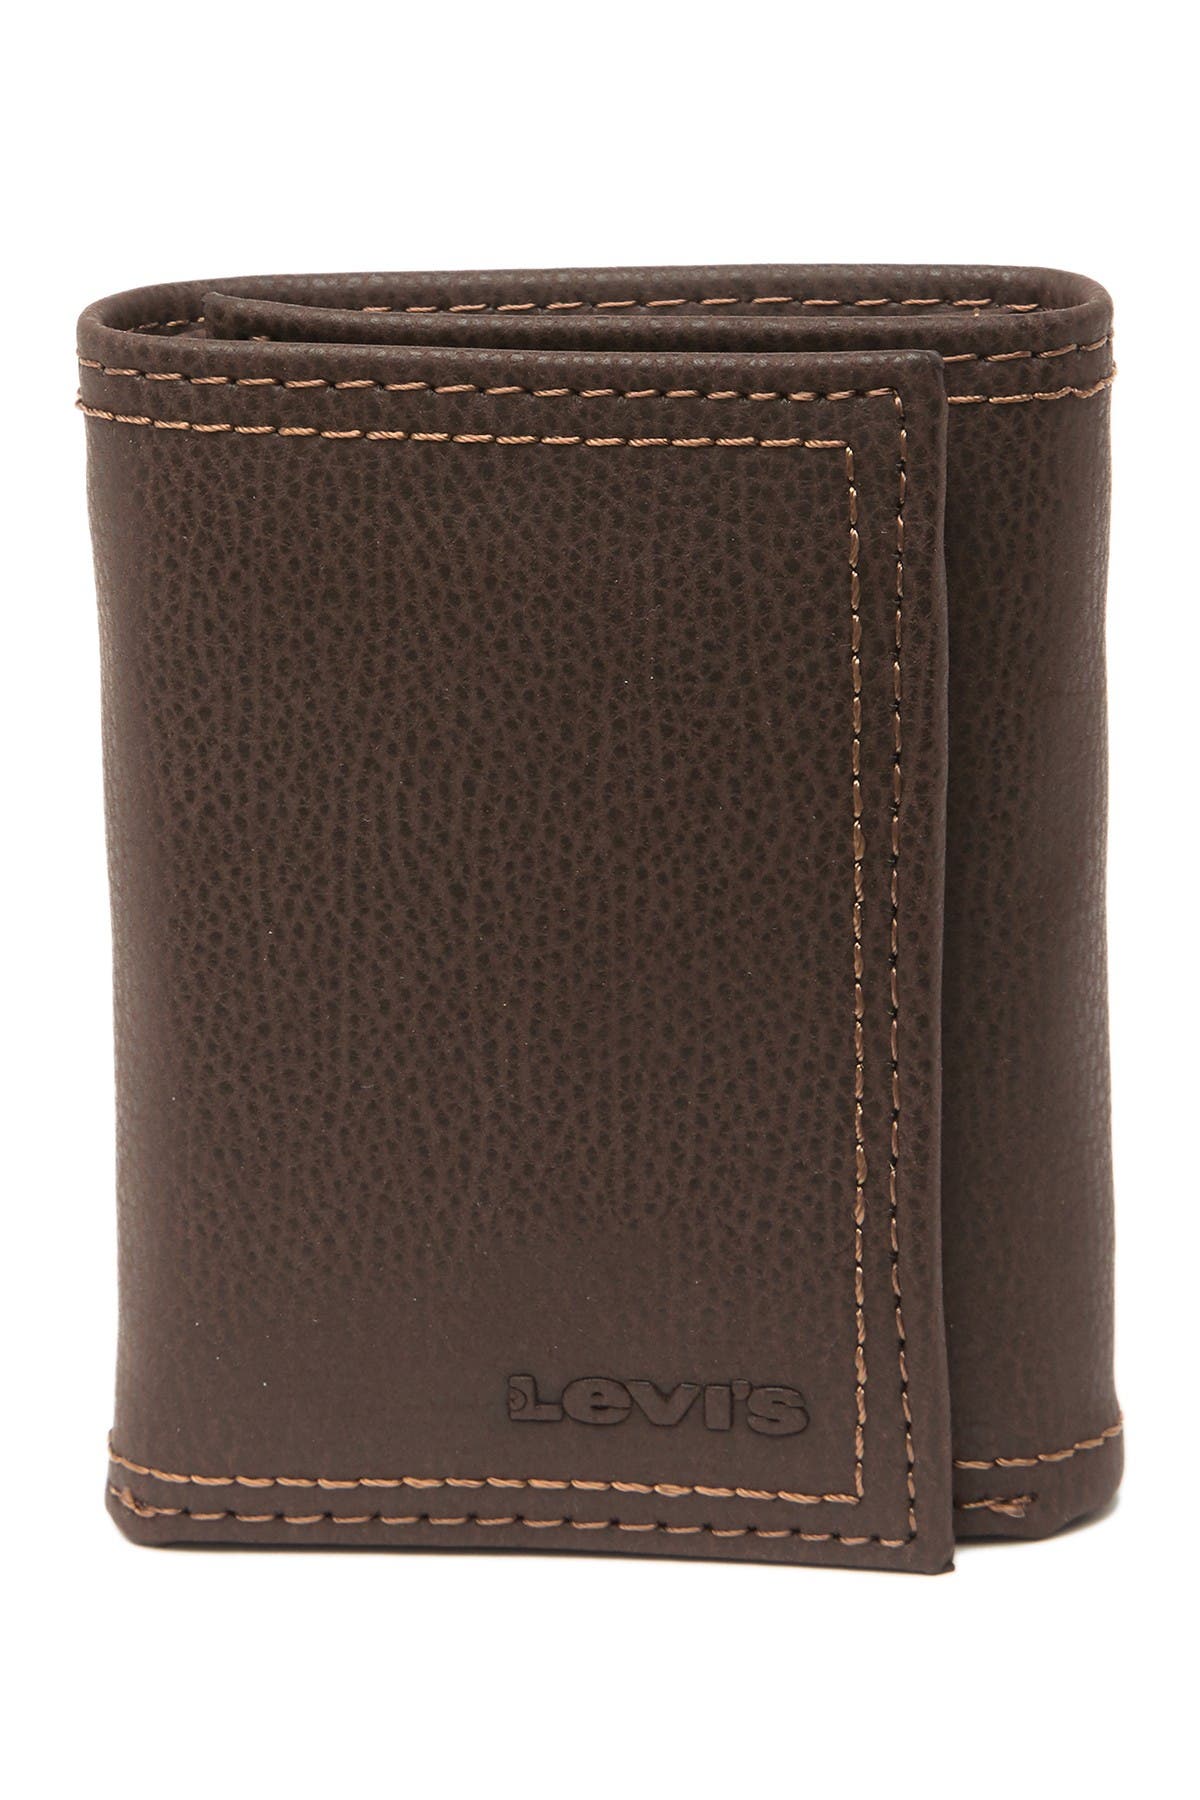 levis wallet brown